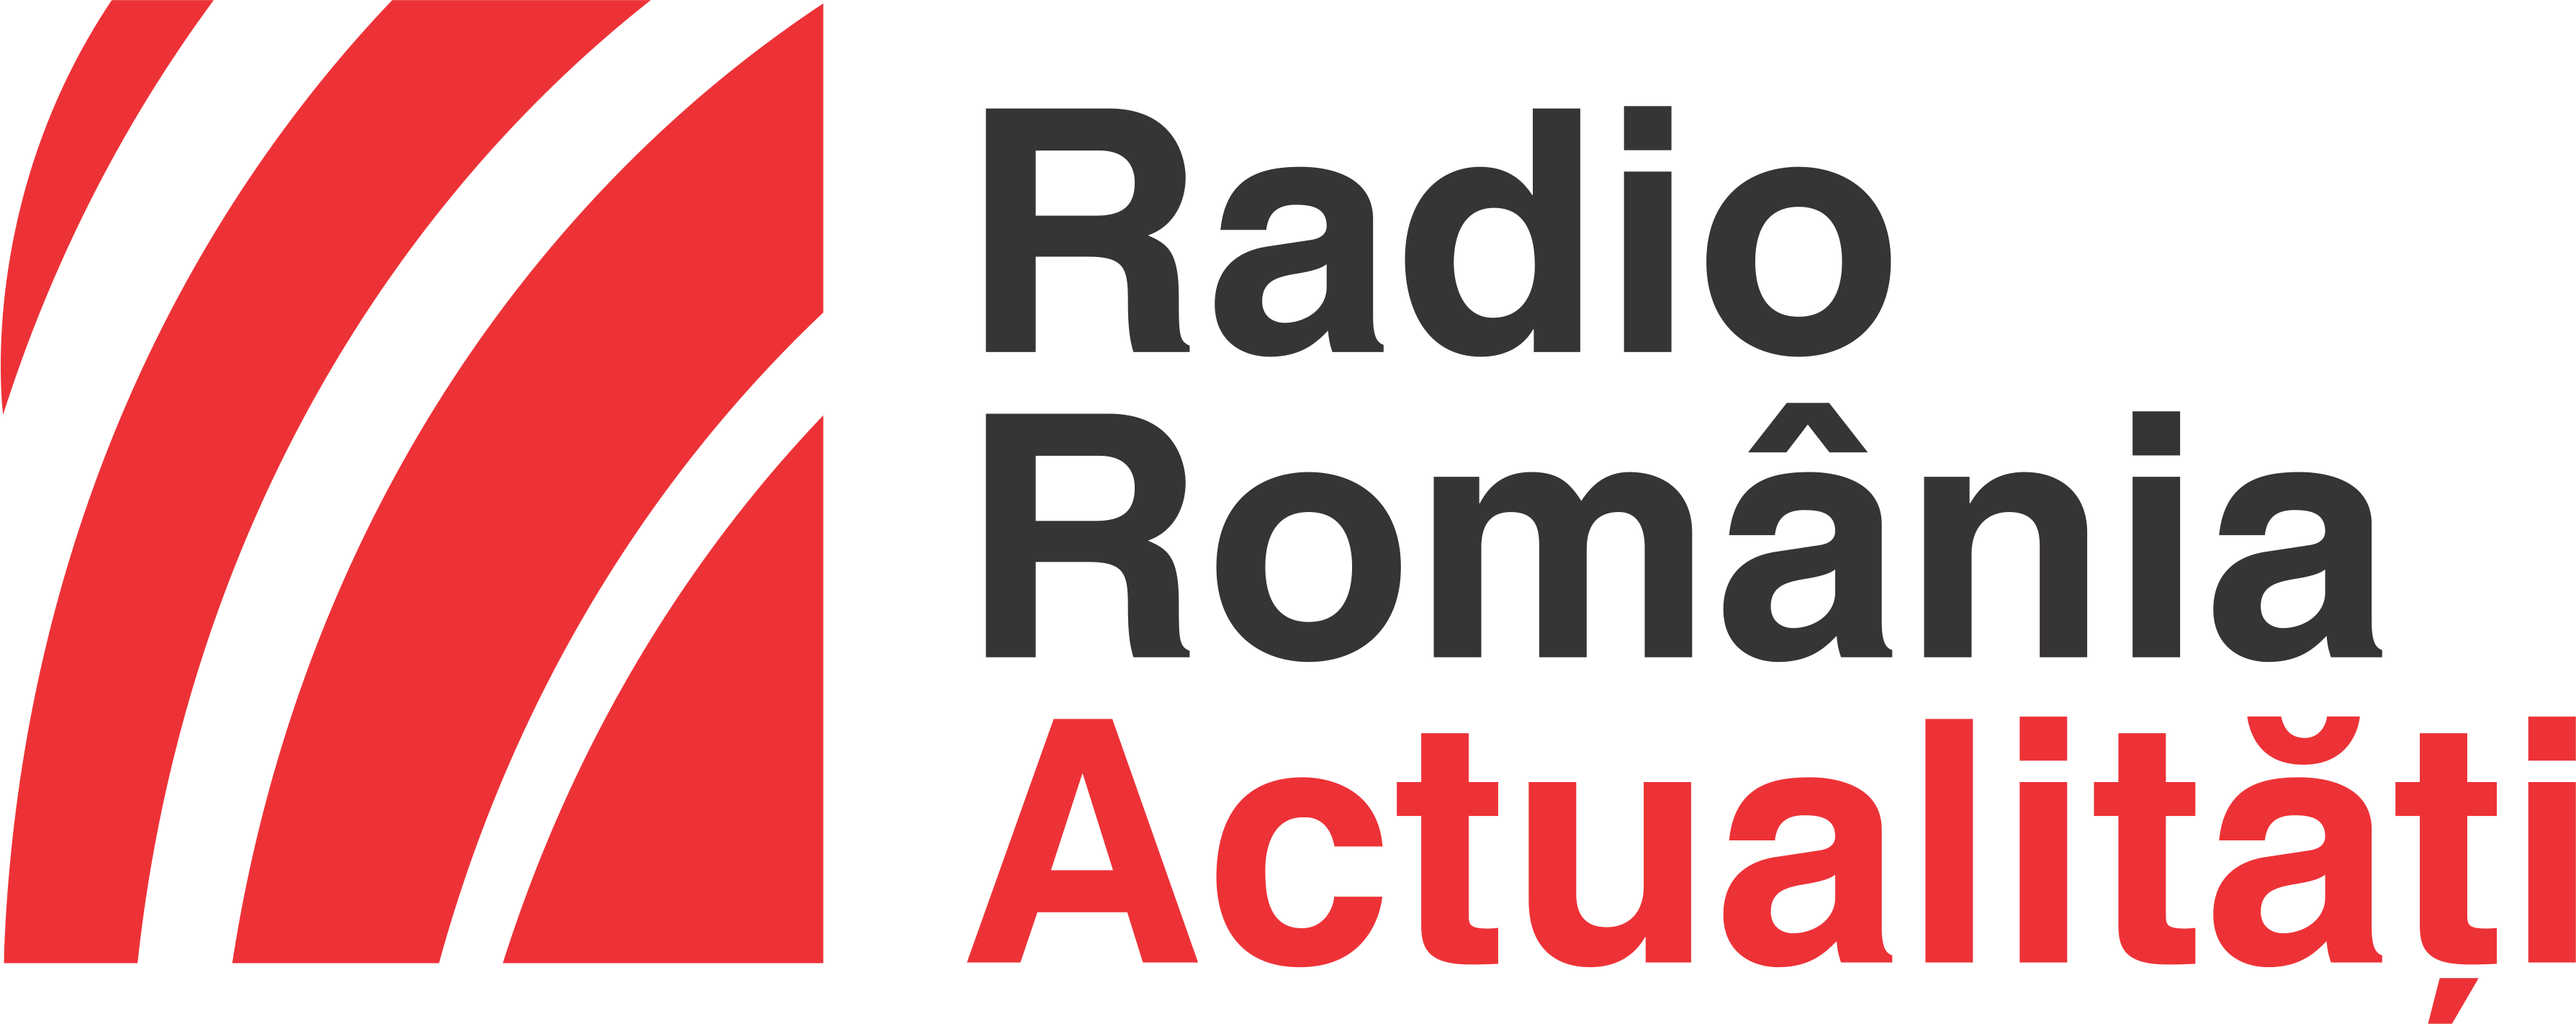 Radio România Actulităţi